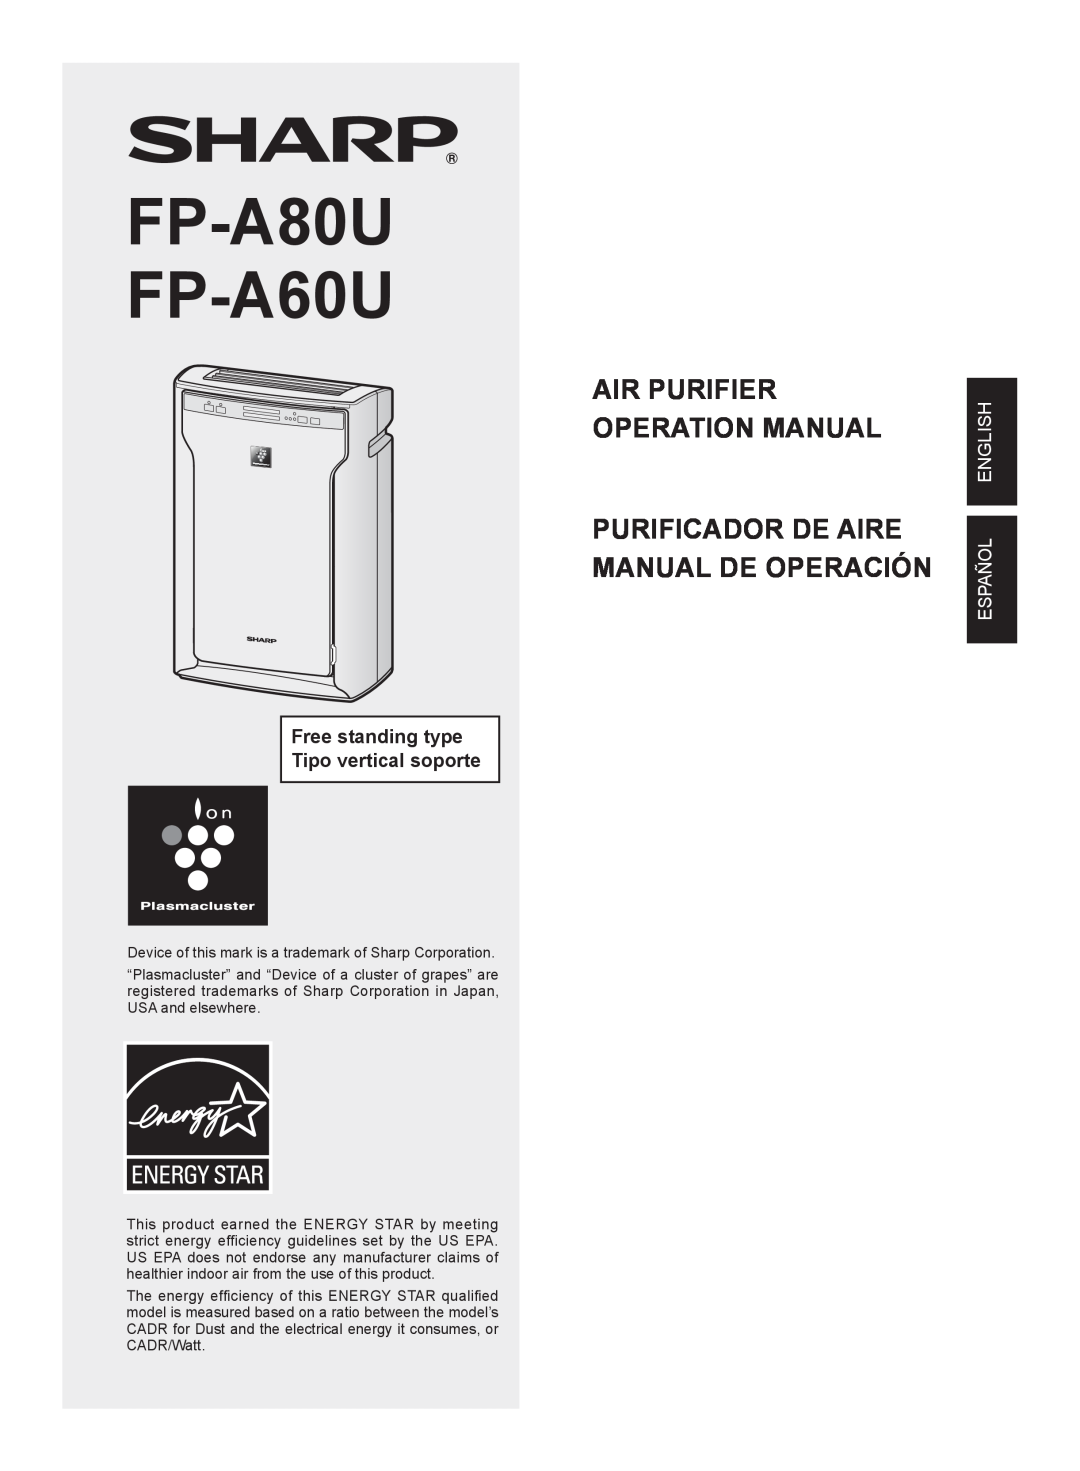 Sharp FP-A80UW operation manual Purificador De Aire Manual De Operación, FP-A80U FP-A60U, Español English 